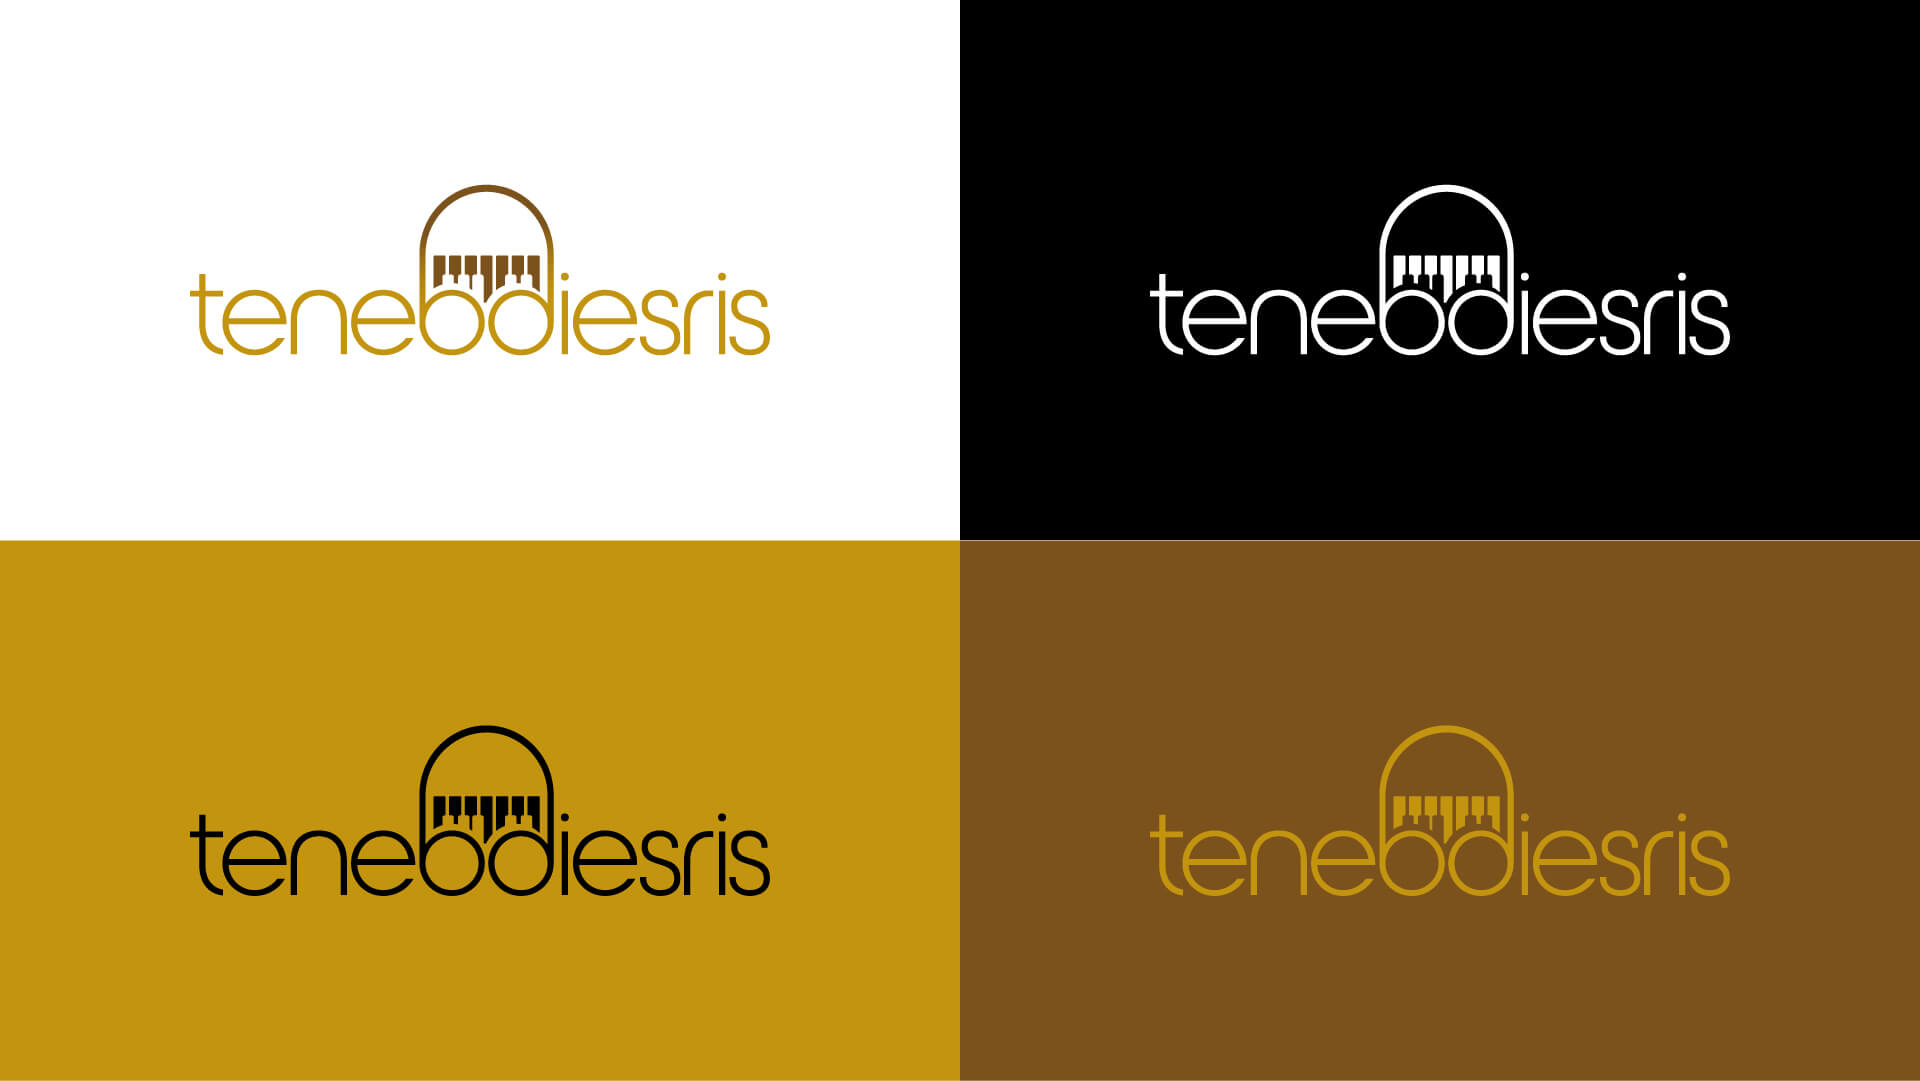 tenebdiesries-logo-2